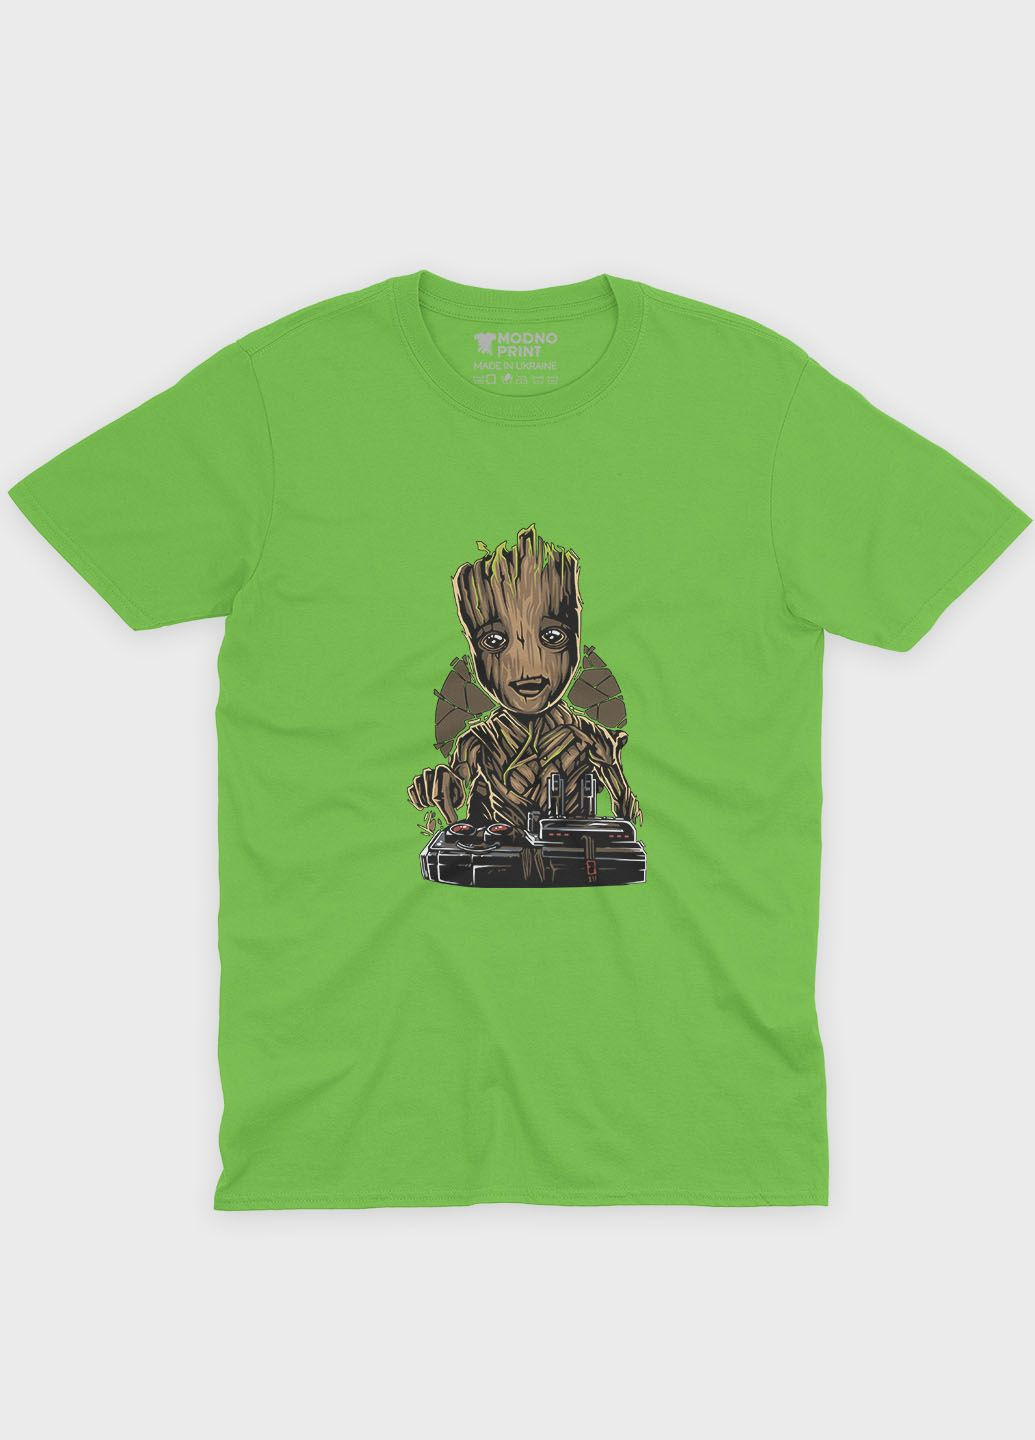 Салатовая демисезонная футболка для мальчика с принтом супергероев - часовые галактики (ts001-1-kiw-006-017-014-b) Modno